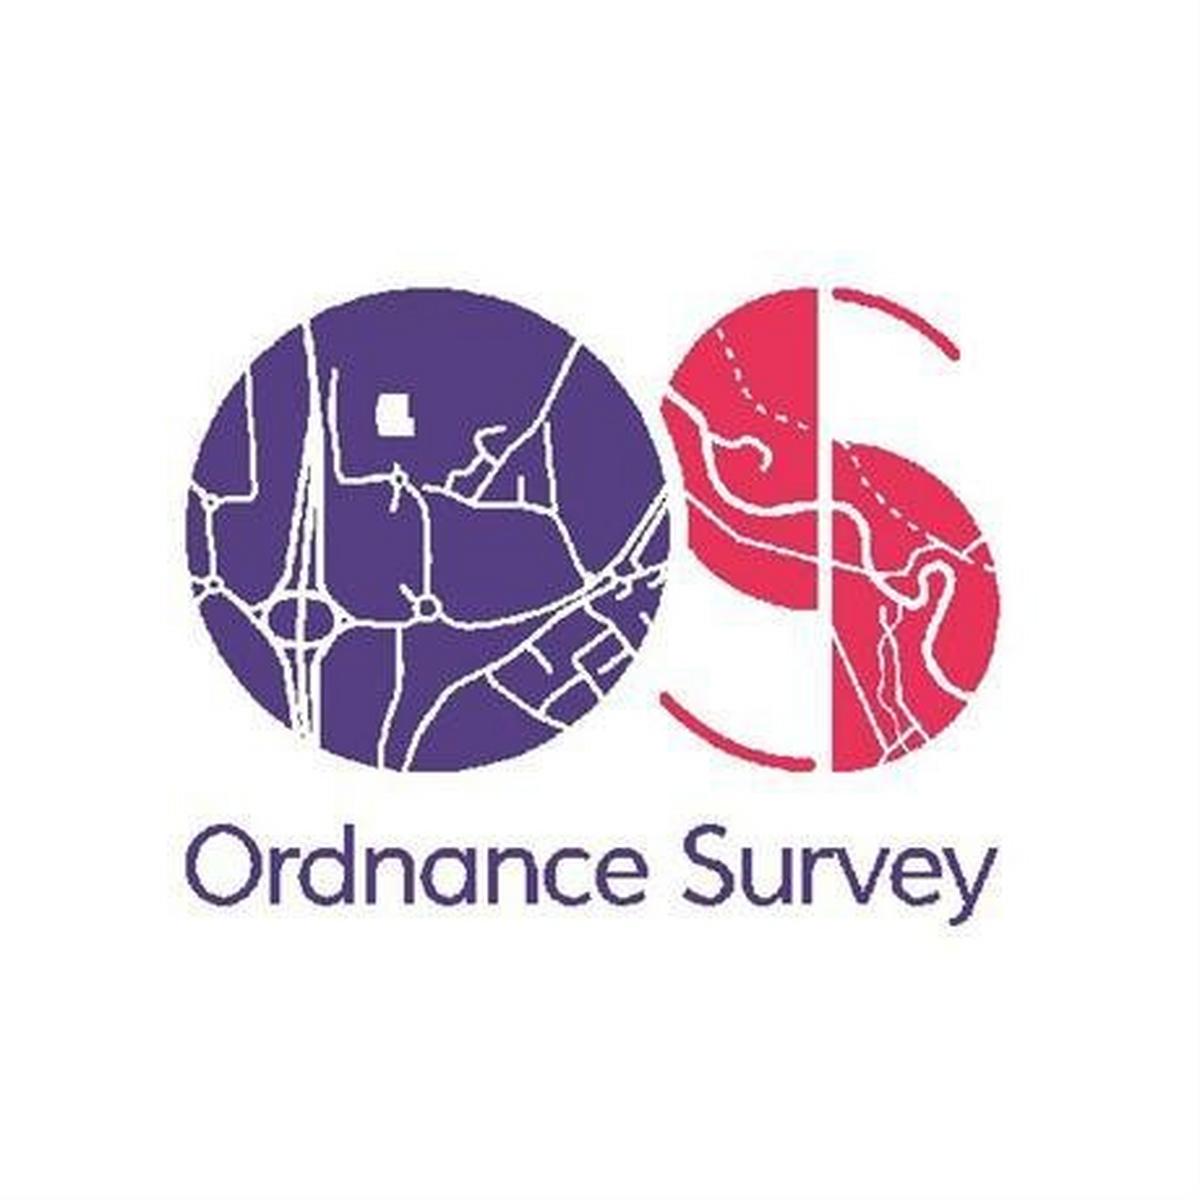 Ordnance Survey OS Landranger Map 56 Loch Lomond & Inveraray